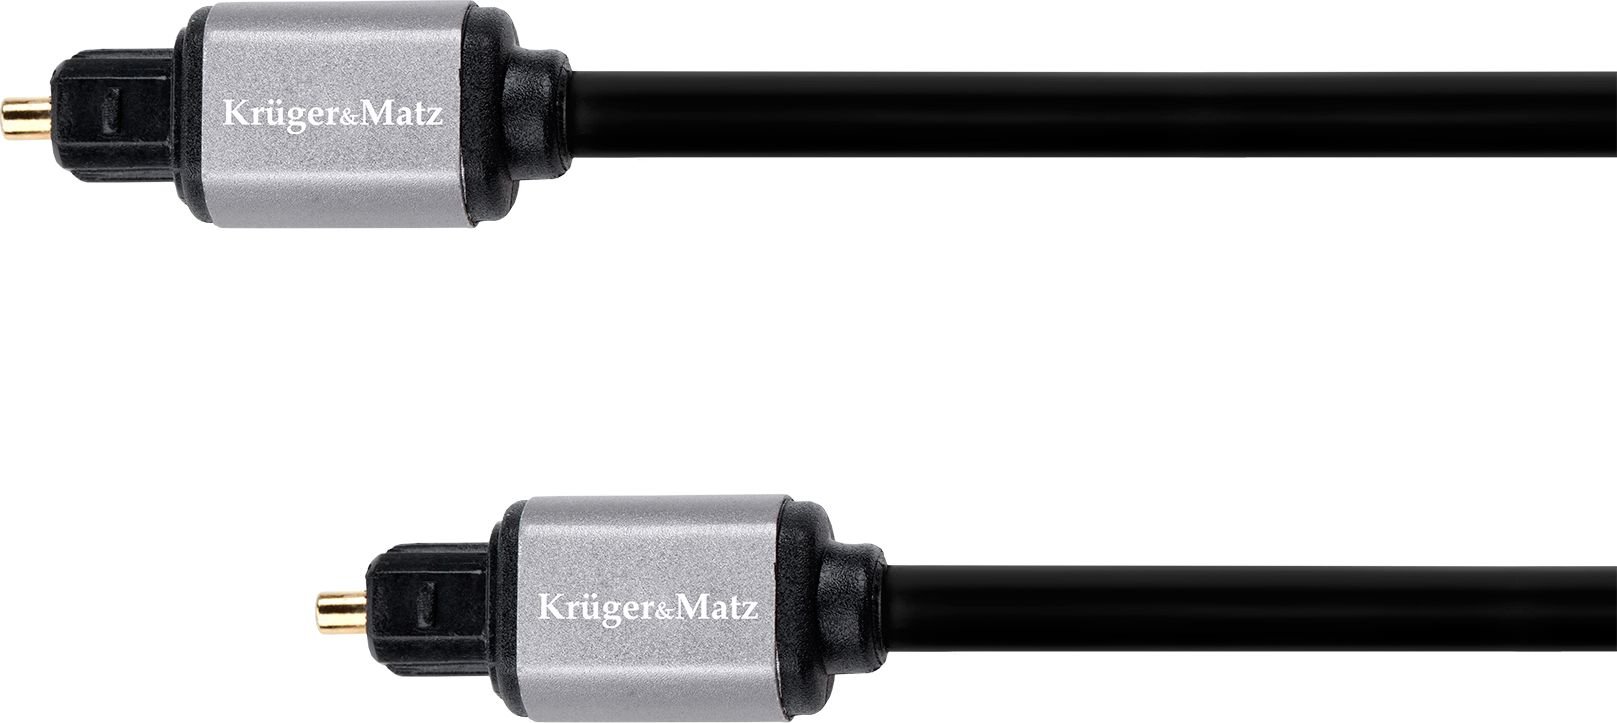 Cablu optic 1 m Kruger&Matz Basic